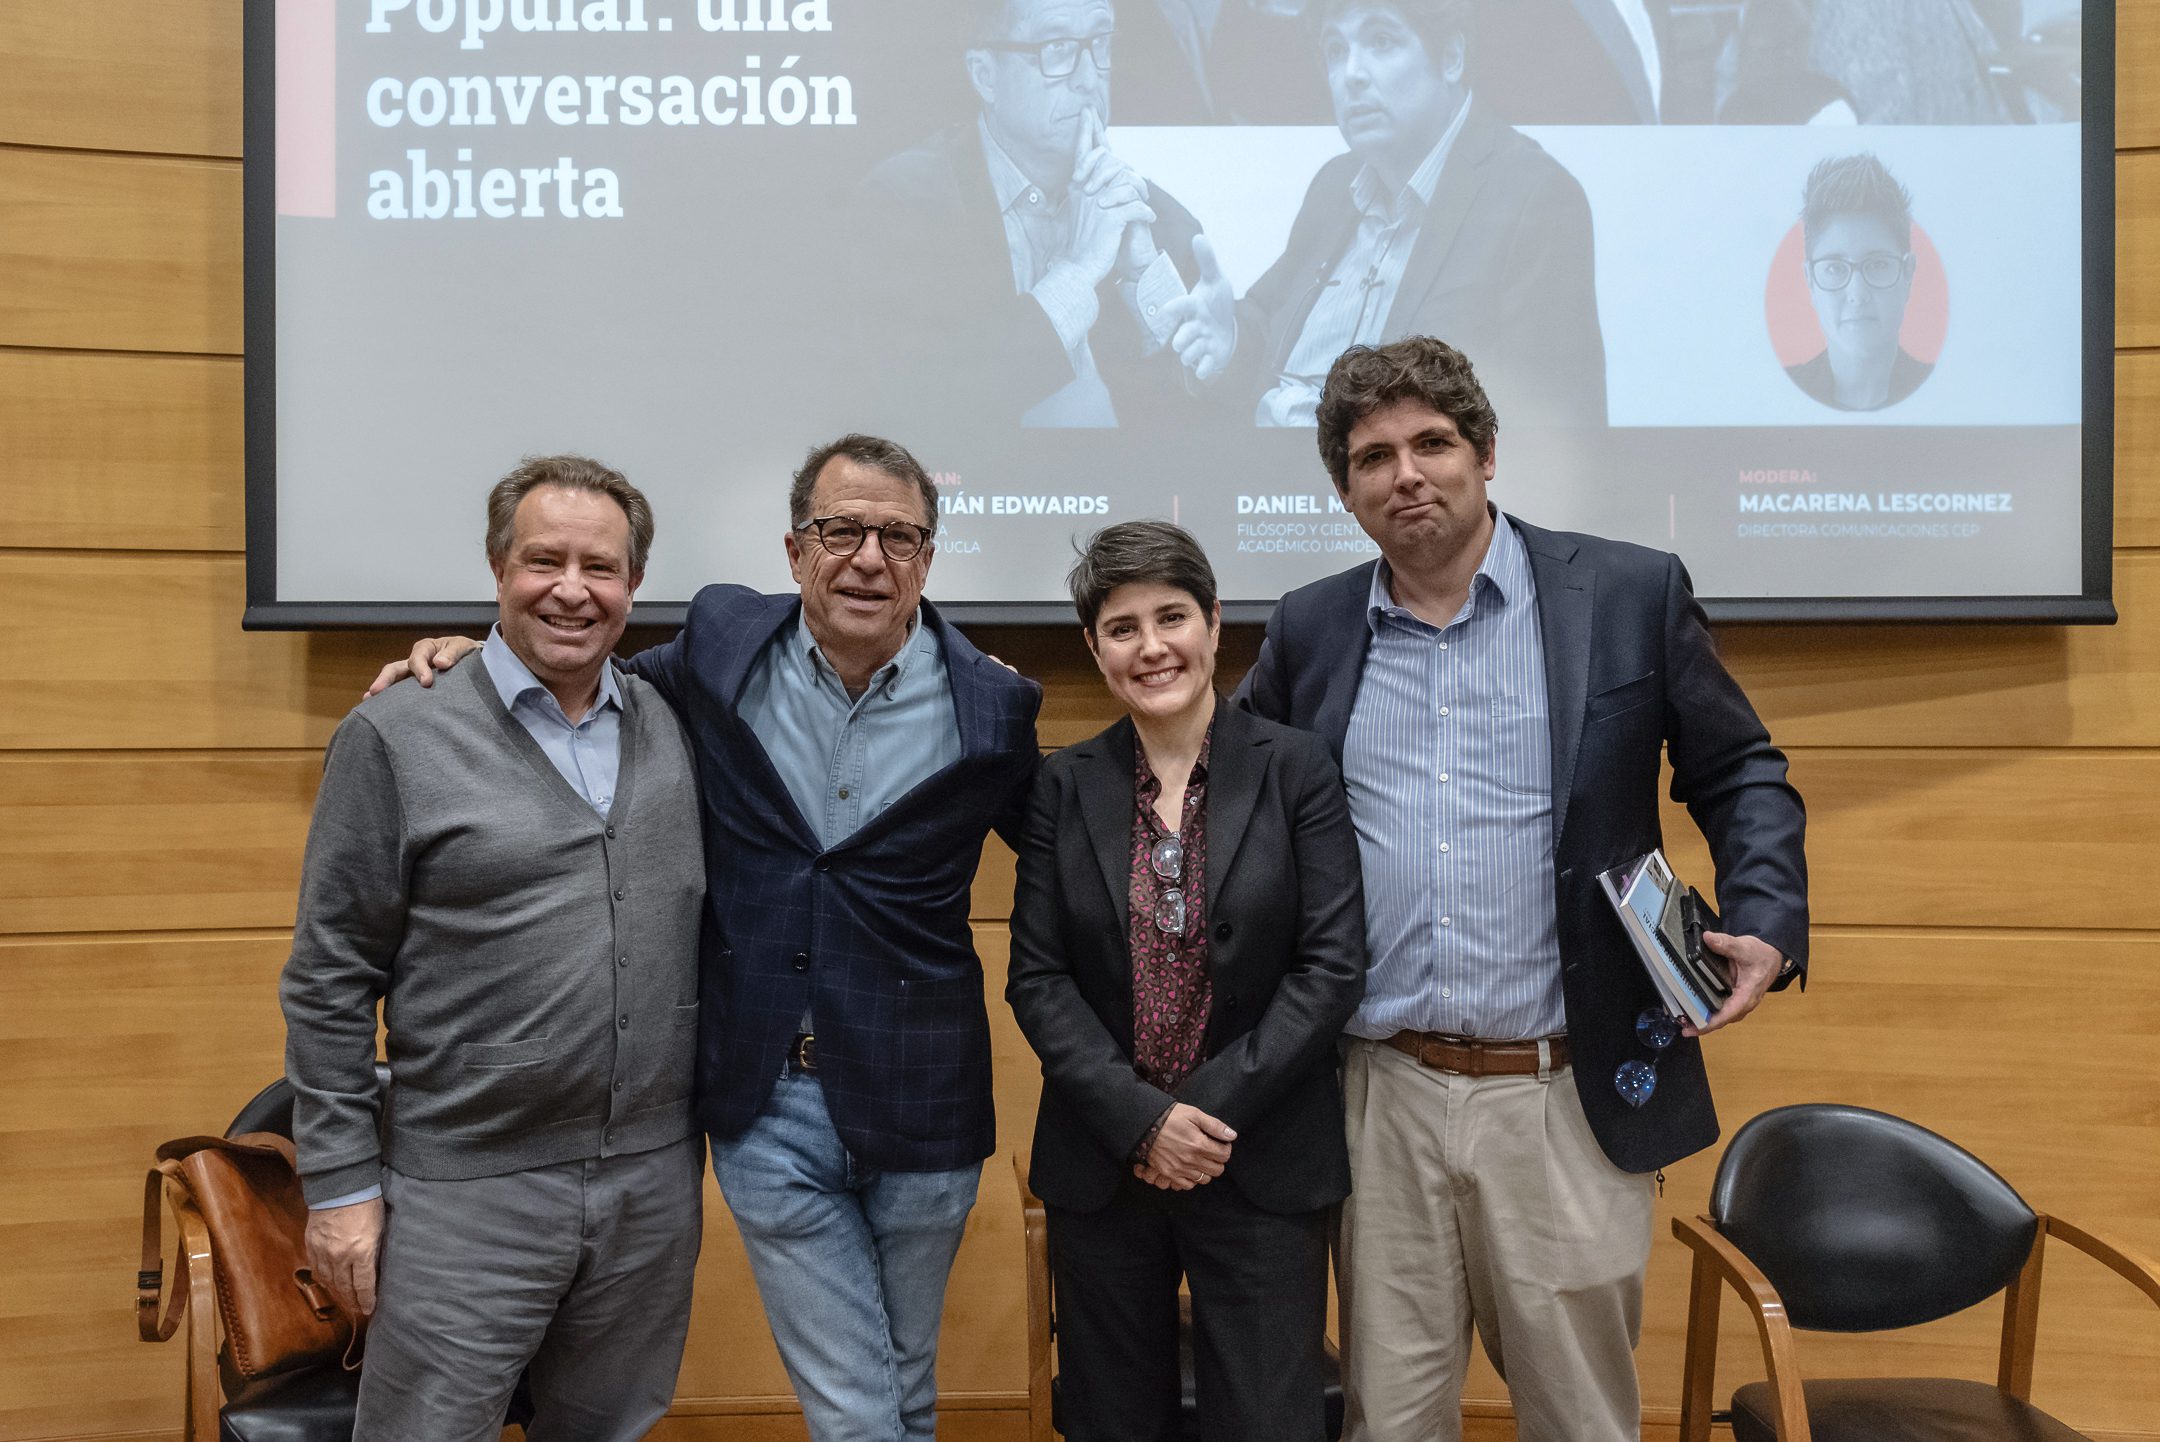 Salvador Allende y la Unidad Popular: una conversación abierta